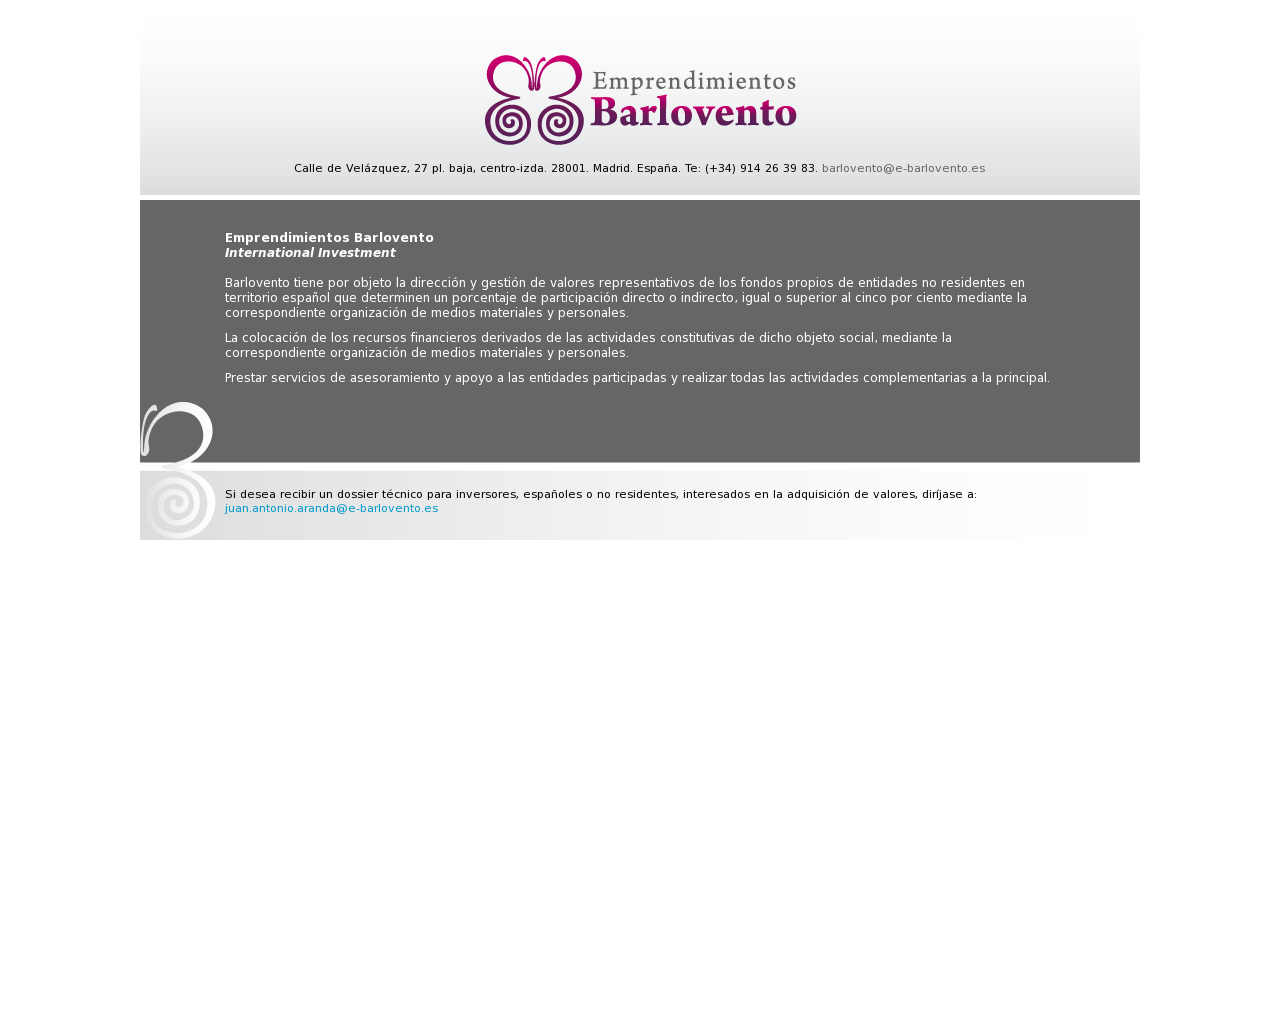 El sitio de la imagen e-barlovento.es en 1280x1024